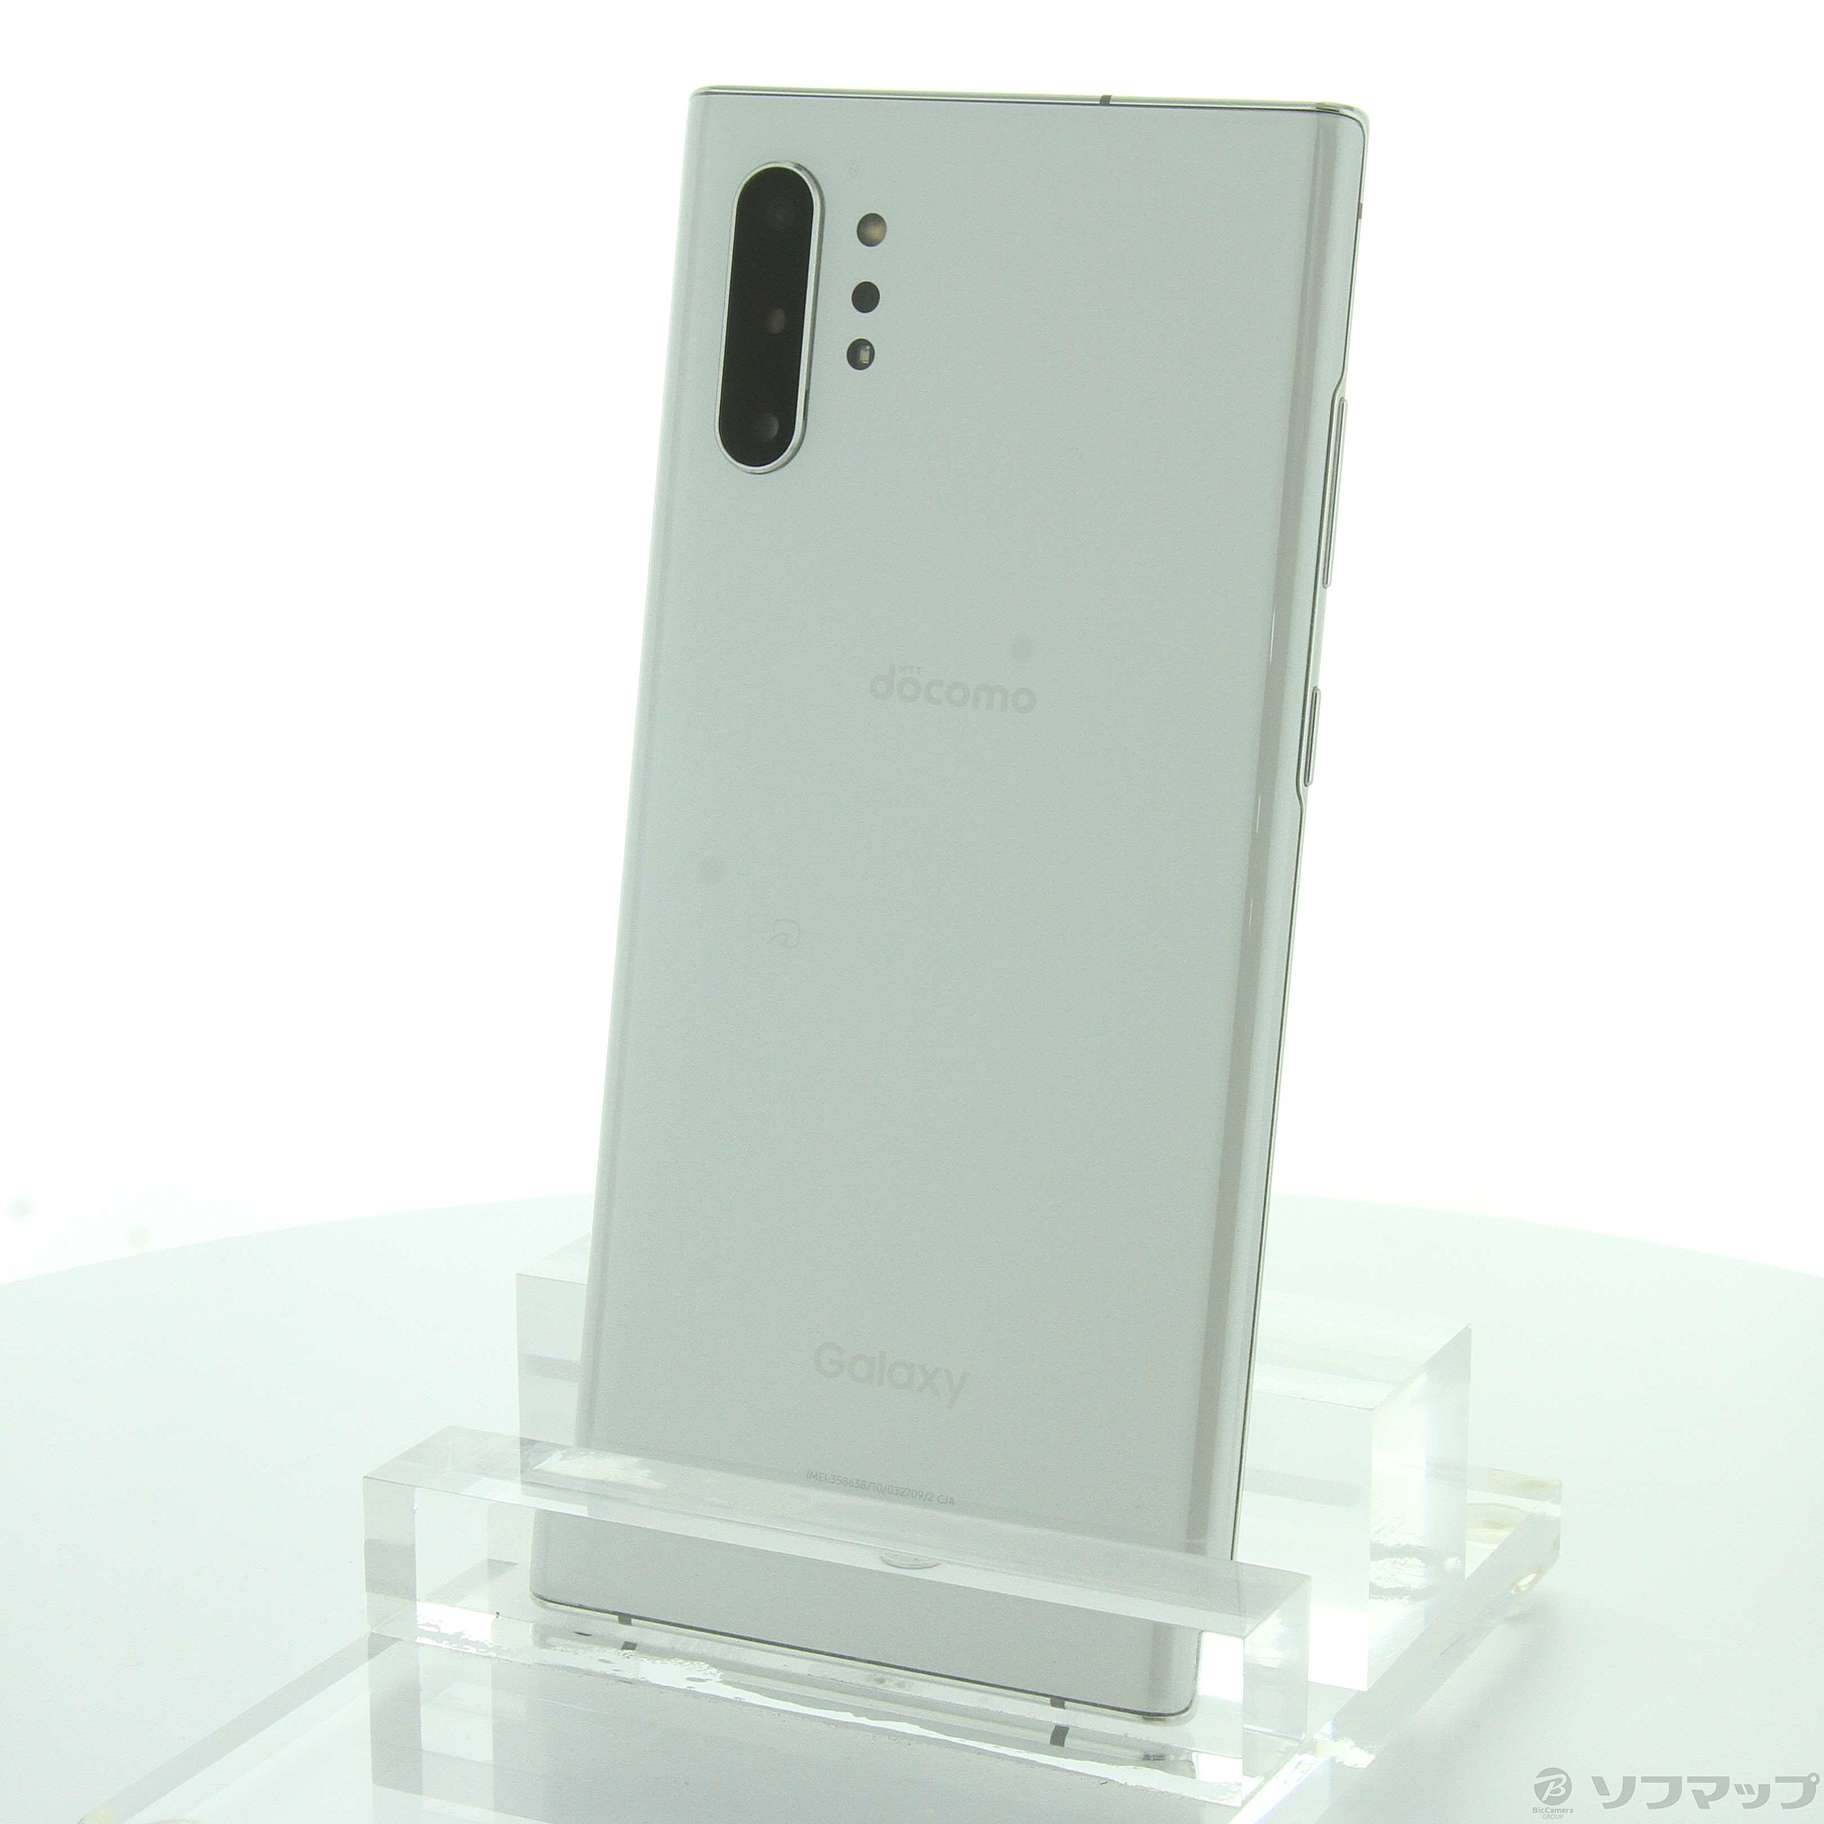 専用 Samsung Galaxy Note10+ ドコモ版 SC-01M - スマートフォン本体